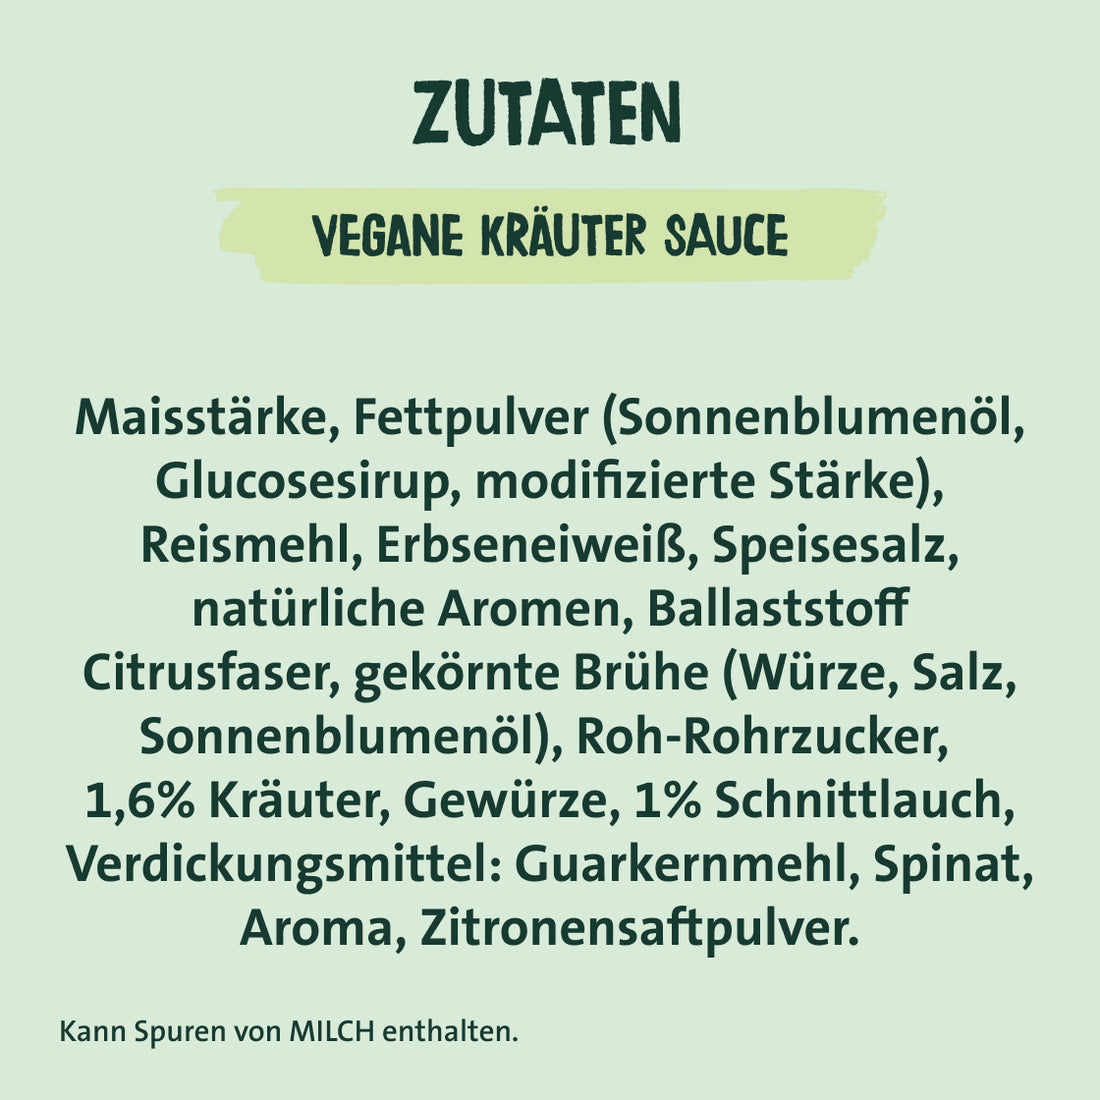 Zutaten vegane Kräuter Sauce